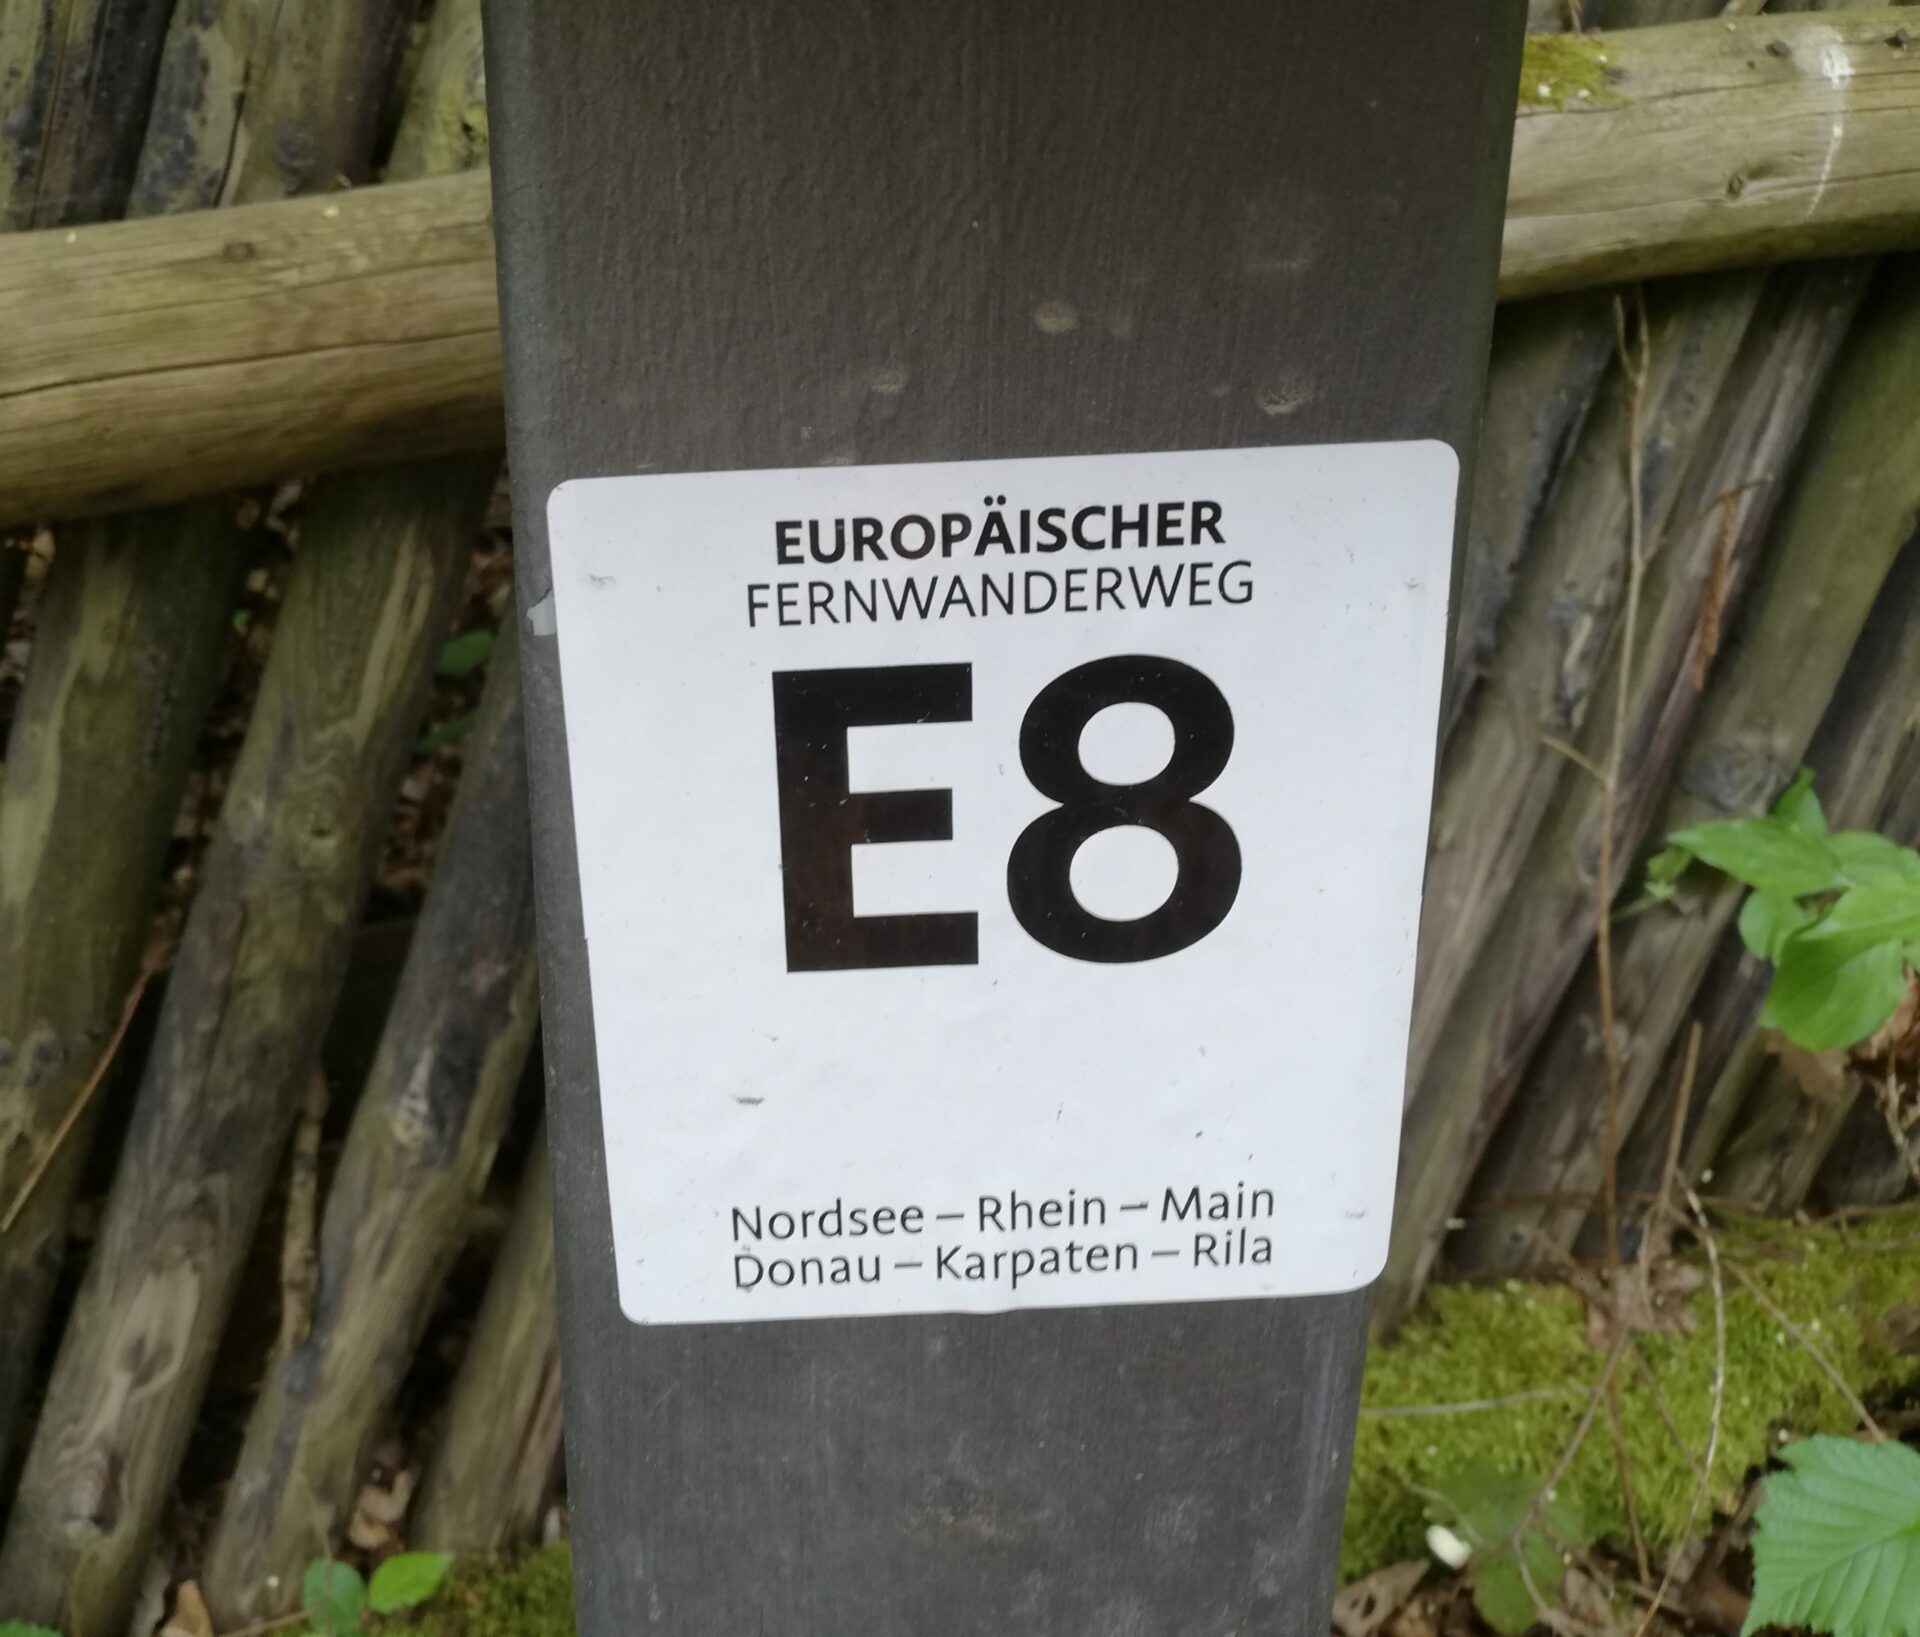 20 europaeischer fernwanderweg e8 scaled